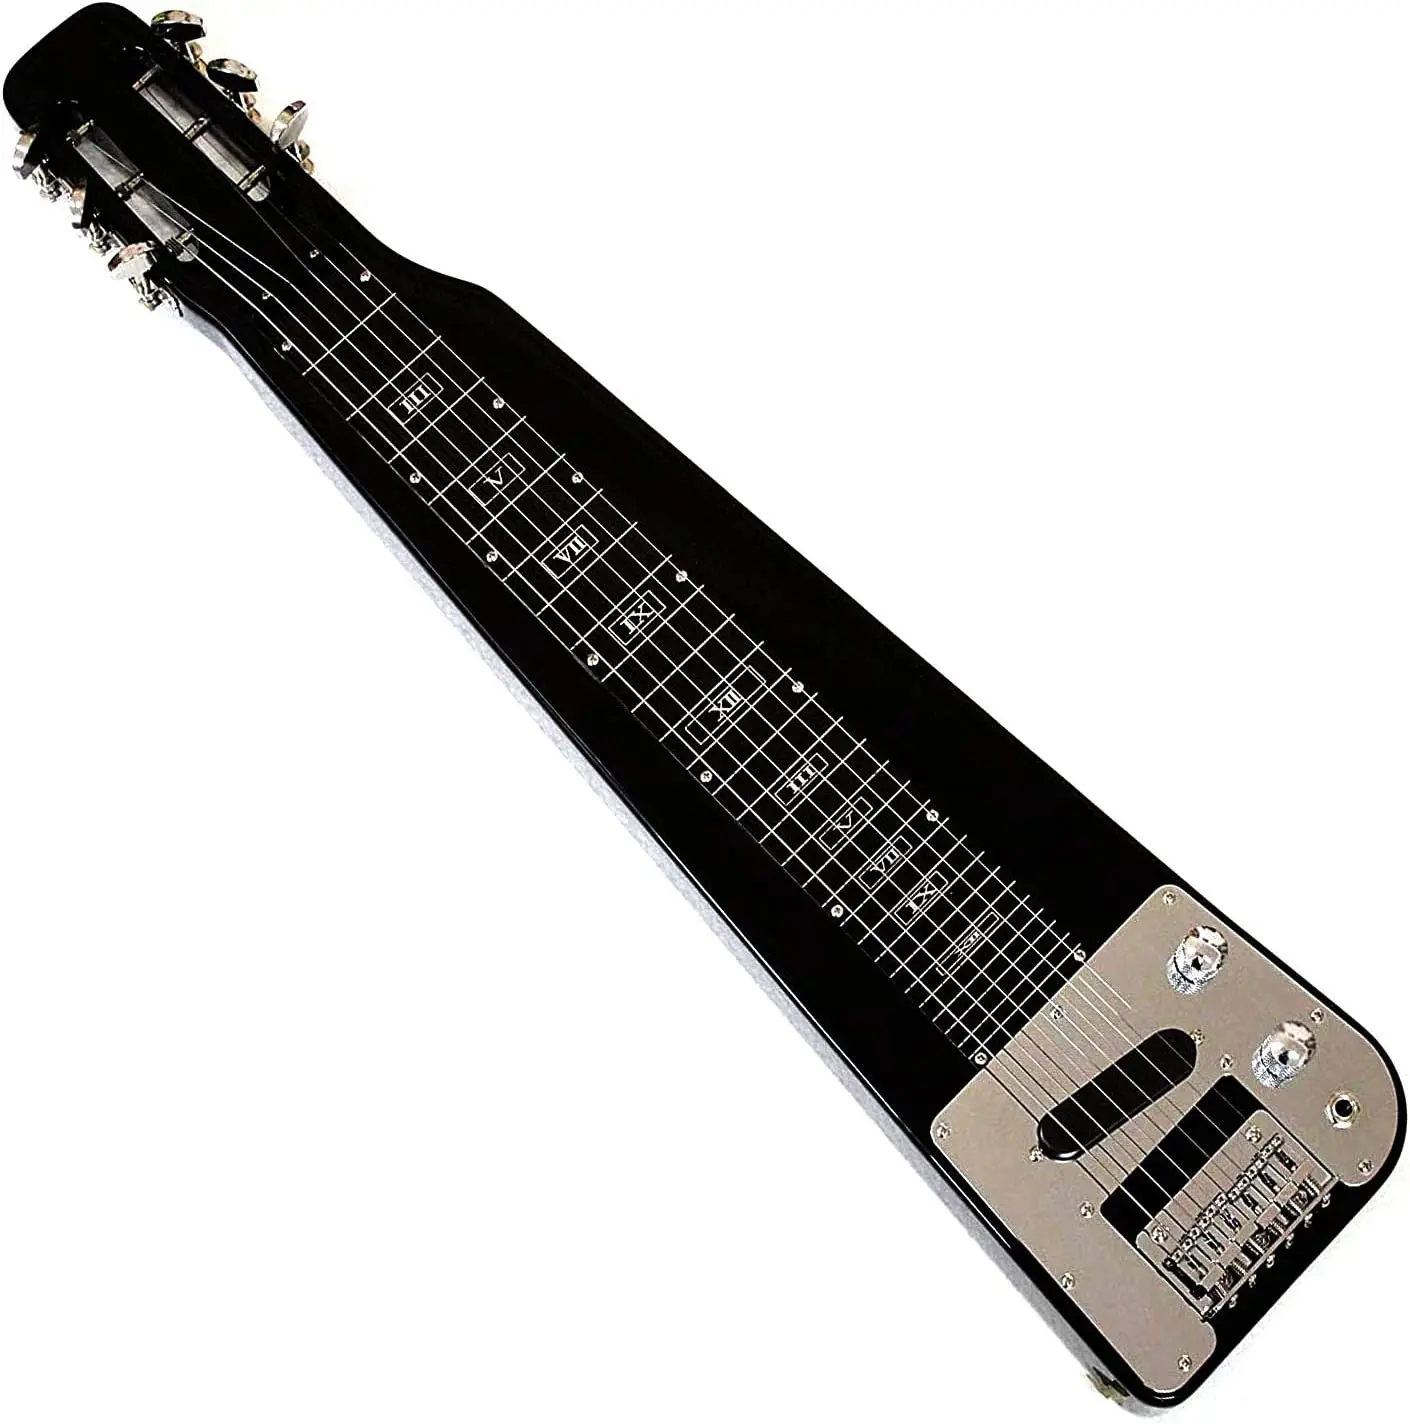 バットキング-スチール製スライディングギター,6弦,スロットヘッド 